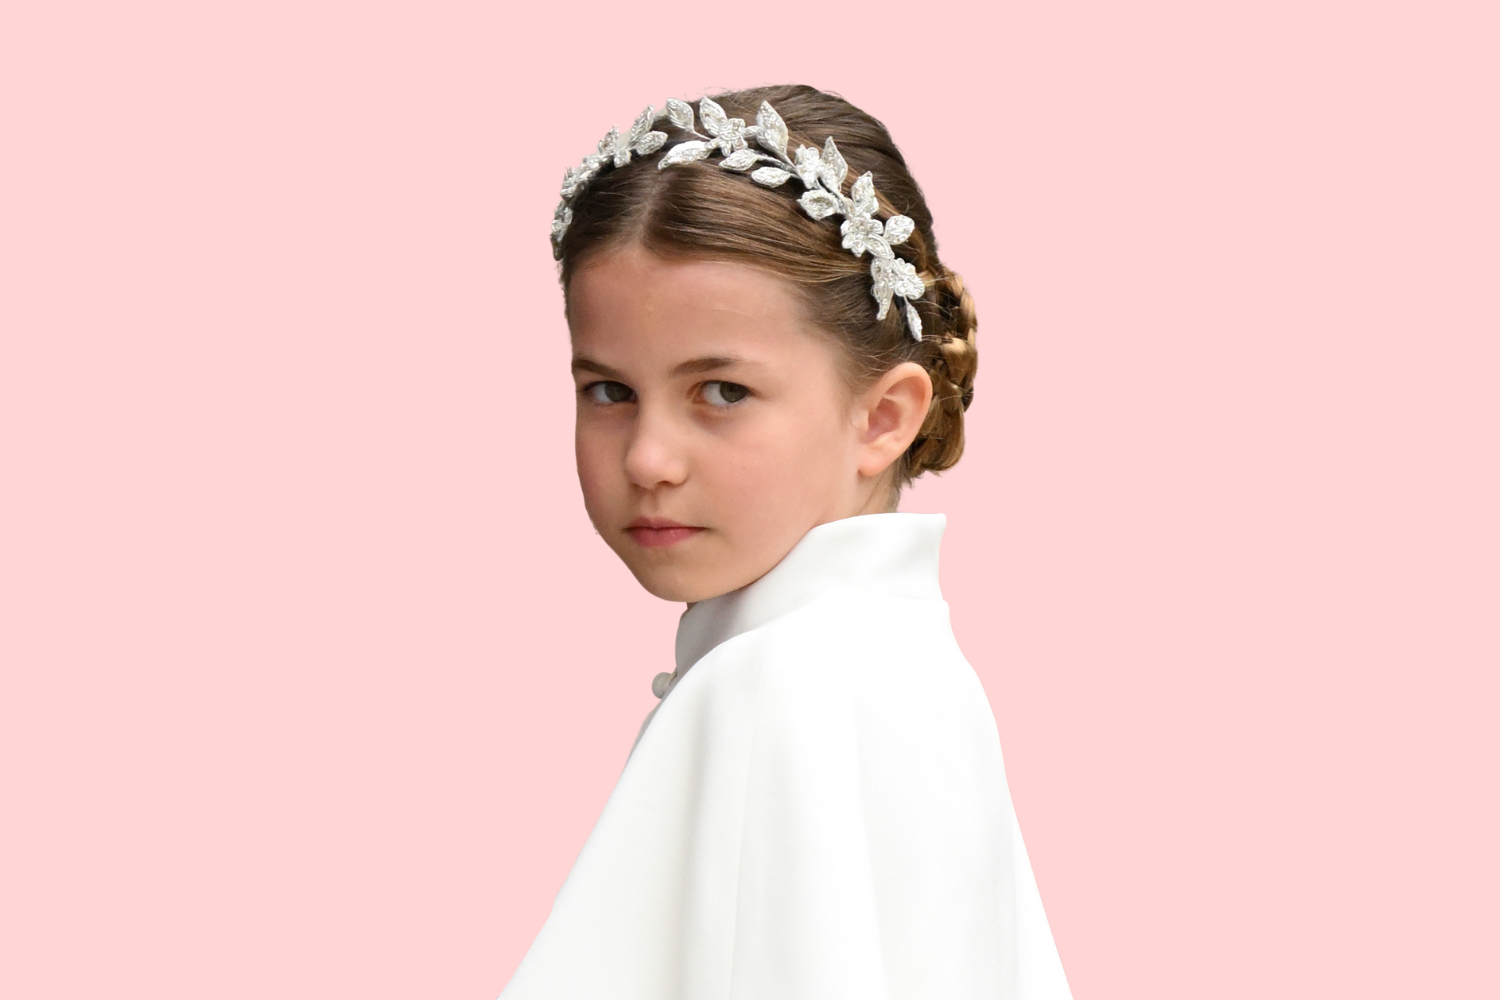 5 إطلالات تُظهر أن الأميرة شارلوت نجمة مستقبلية في عالم الموضة الملكية